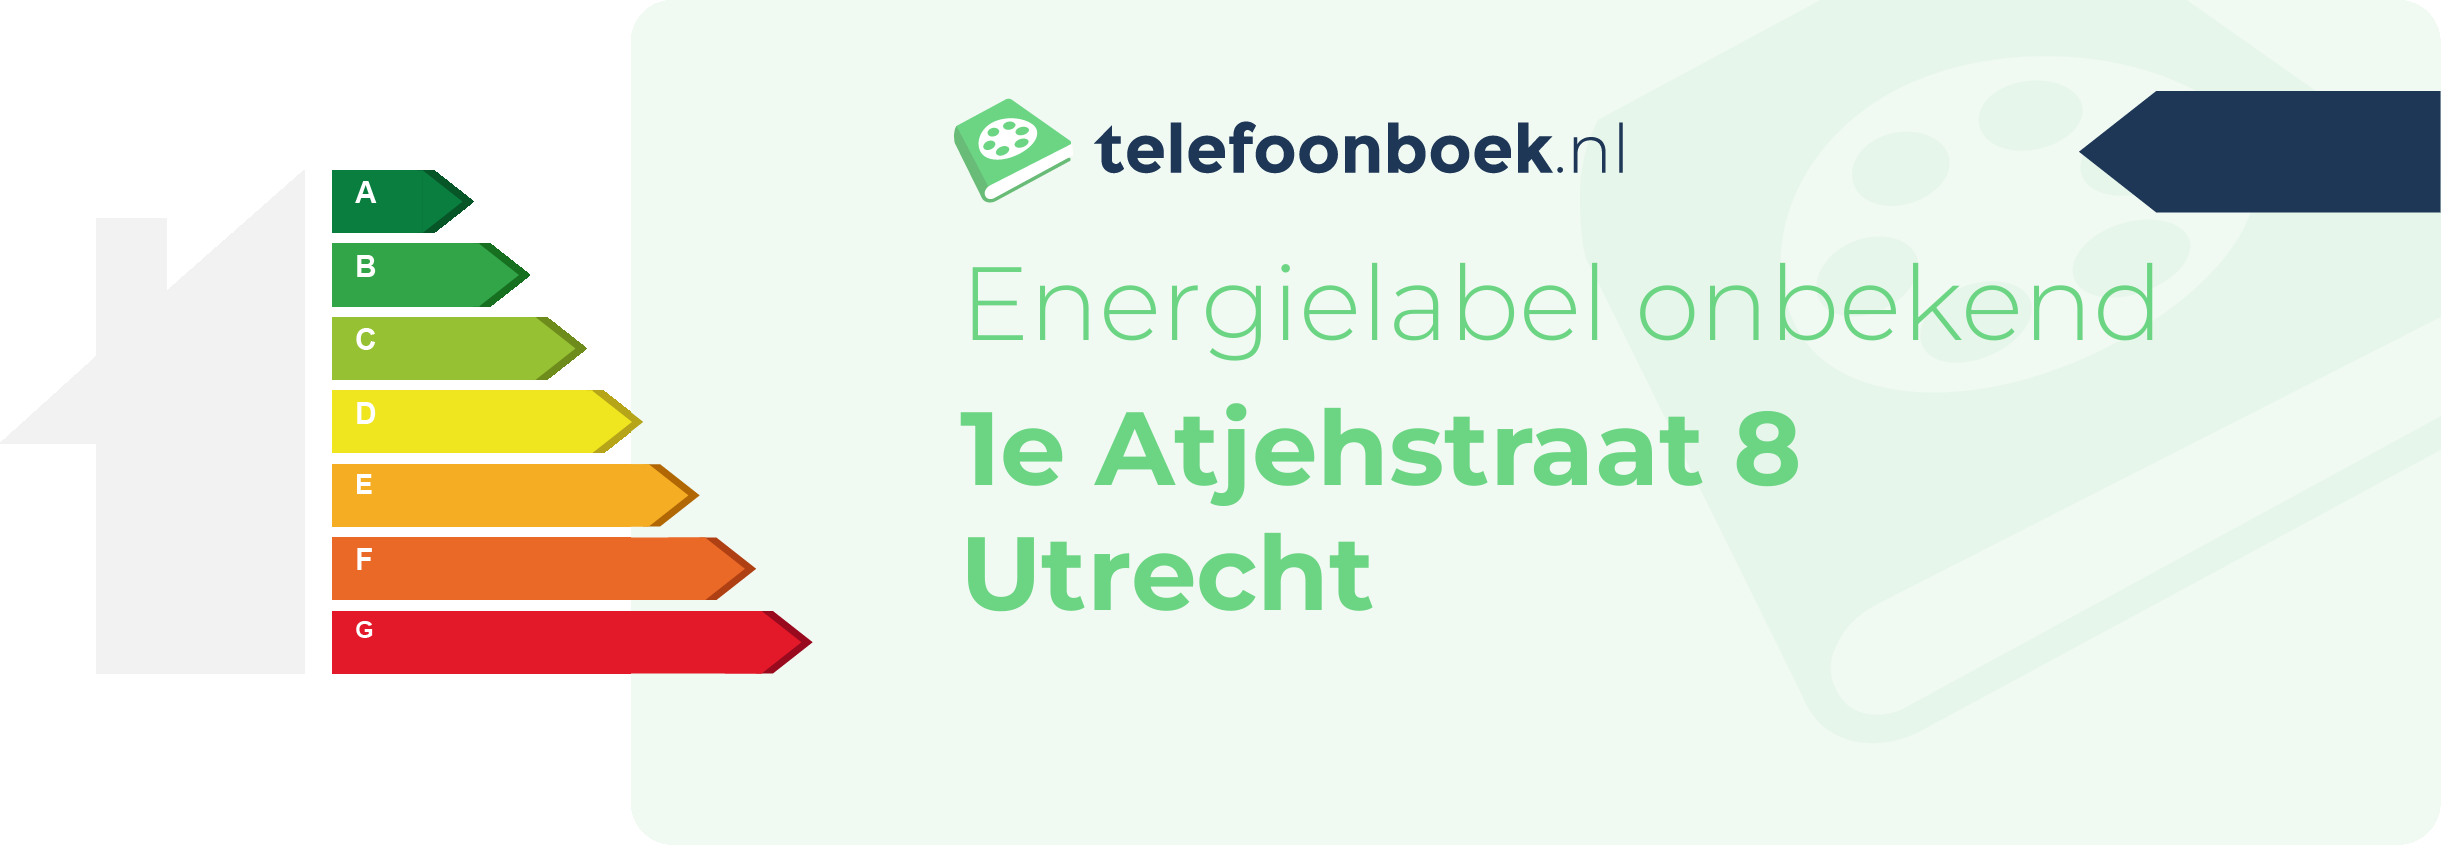 Energielabel 1e Atjehstraat 8 Utrecht